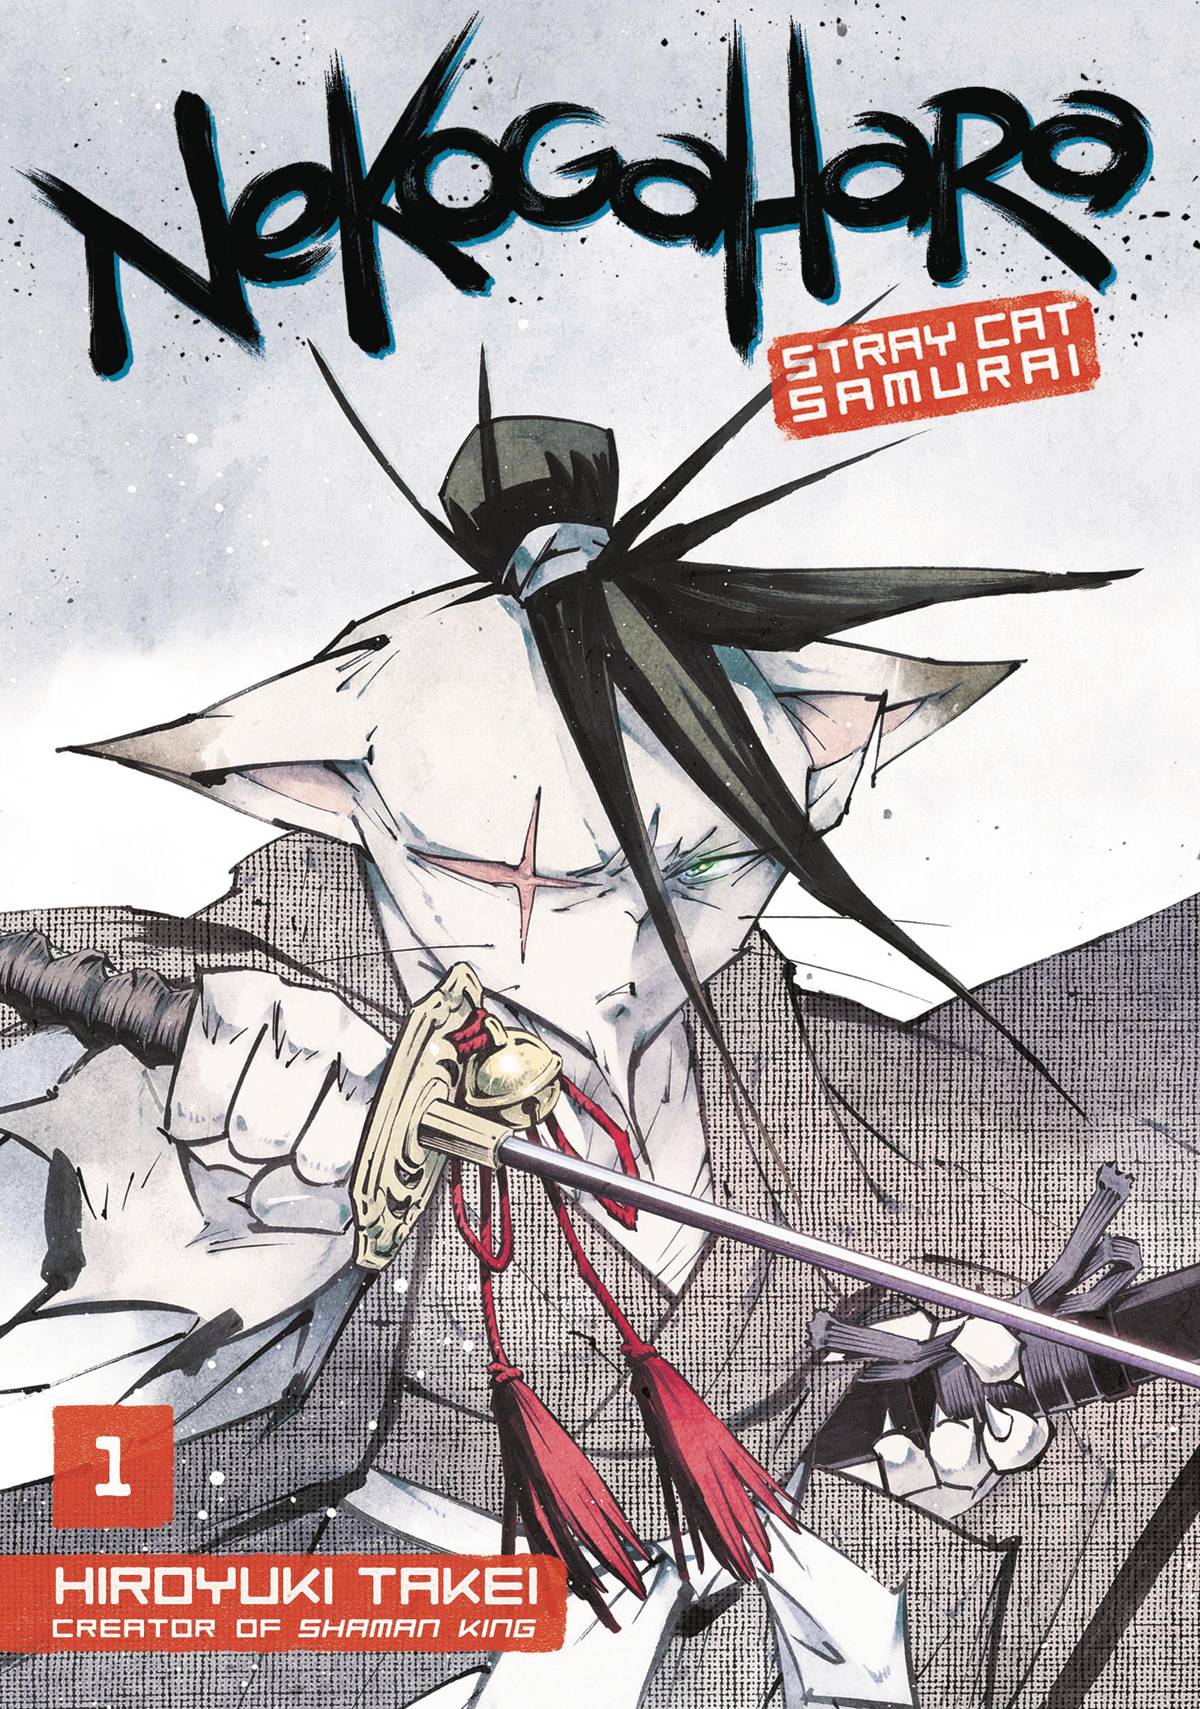 Nekogahara Stray Cat Samurai Manga Volume 2